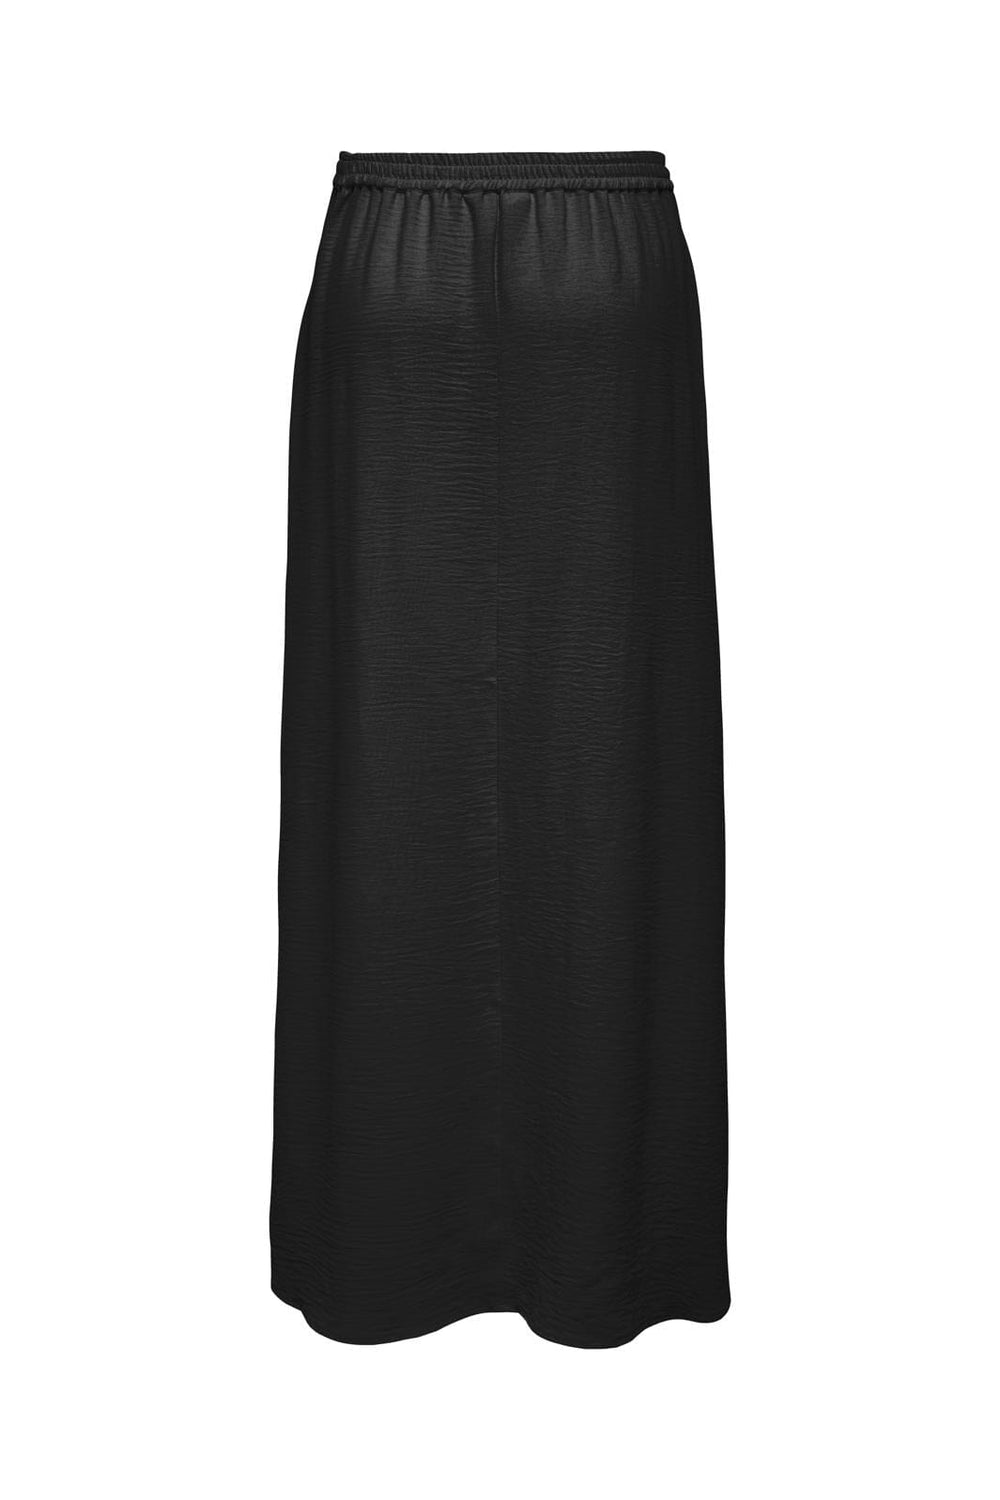 Only - Onlmette Life Long Skirt - 4570928 Black